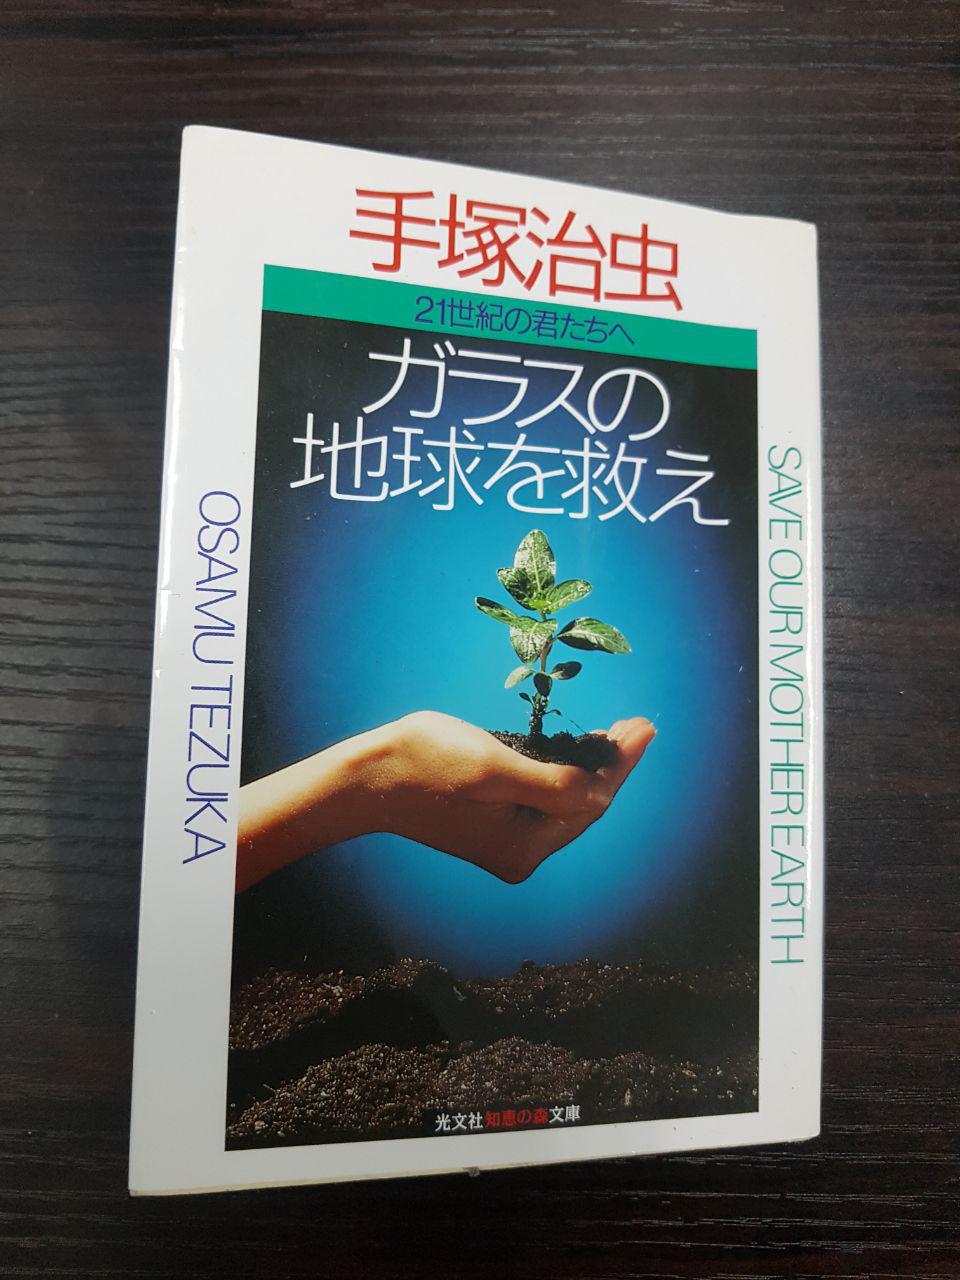 기자가 오키나와 요미탄손에 방문했을 때 벼룩시장에서 100엔을 주고 구입한 <유리의 지구를 구해라>. 테즈카 오사무의 생애와 사상을 파악할 수 있는 좋은 책이다.